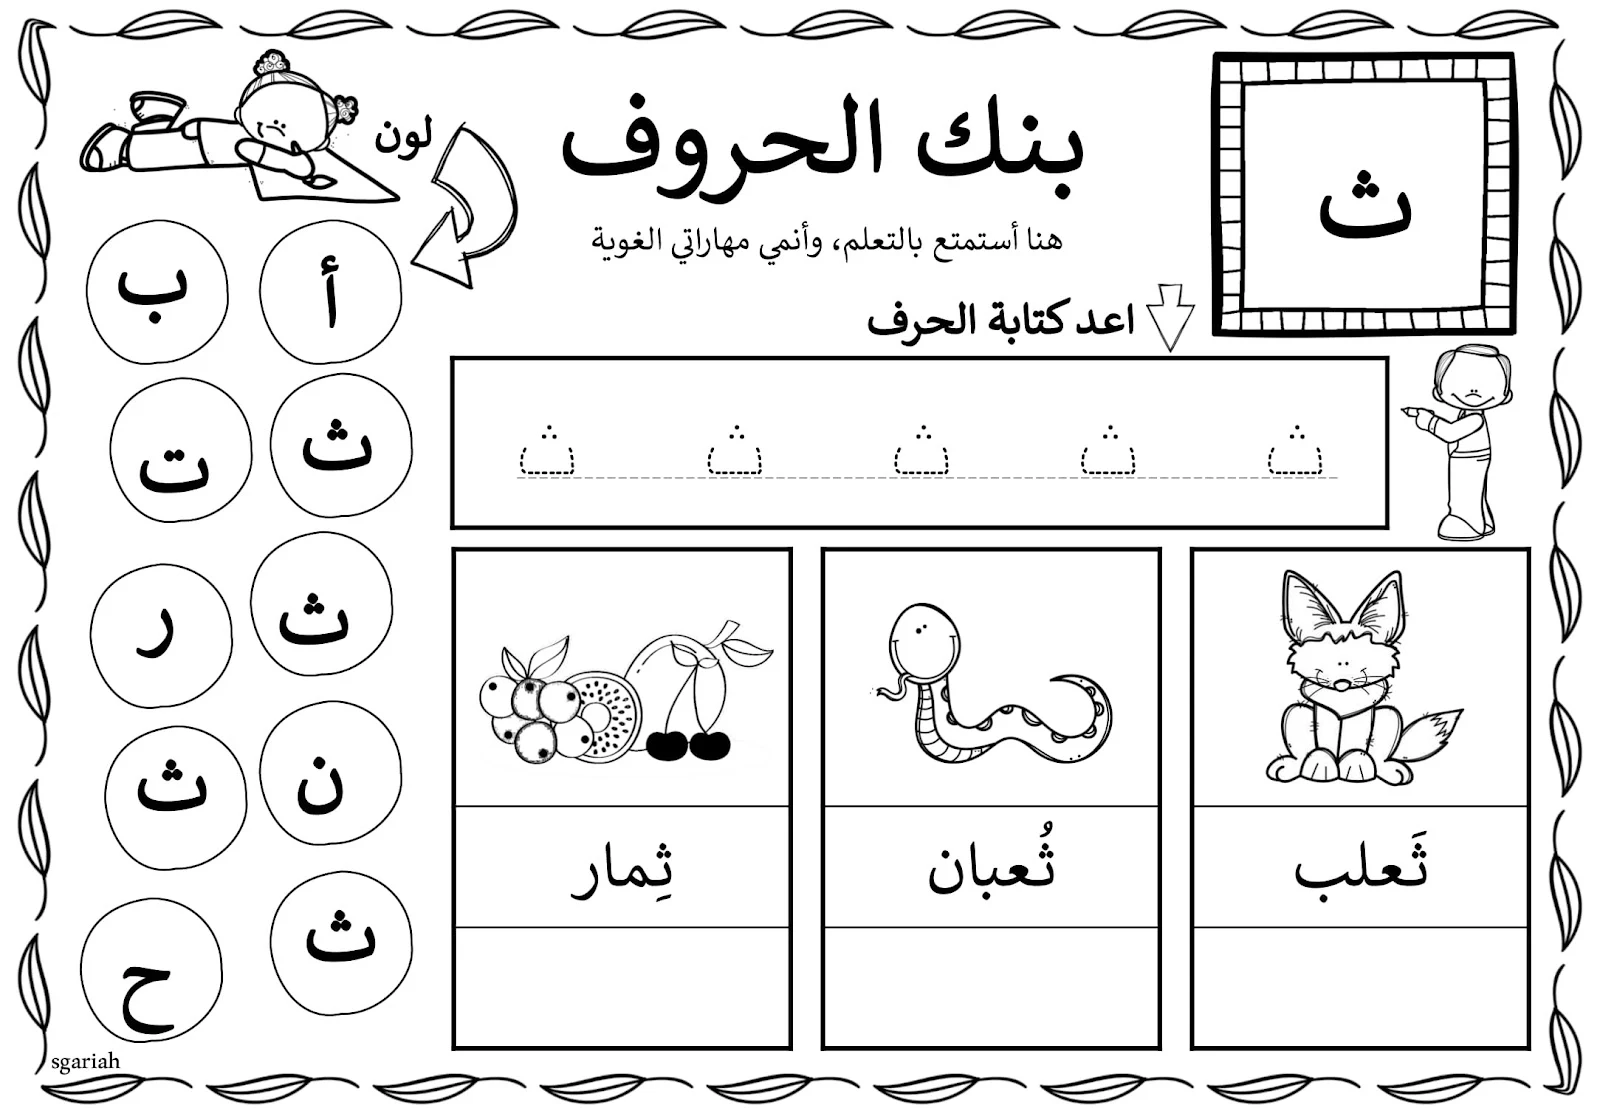 بنك الحروف لتعليم الحروف للاطفال جاهزة للطباعة مجانا pdf